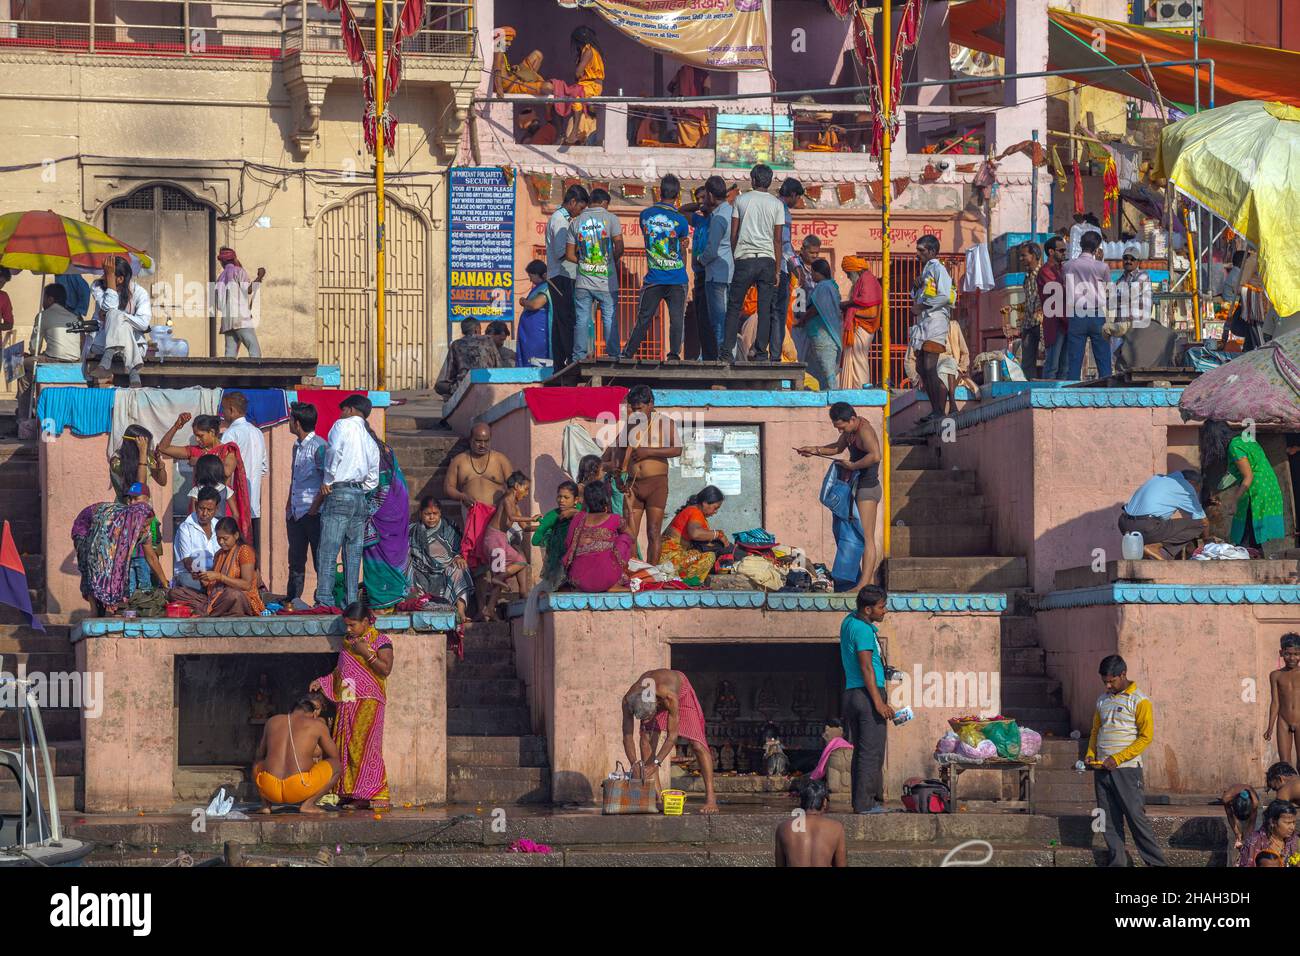 Pilgrims and sadhus at holy ghats in Varanasi, India Stock Photo